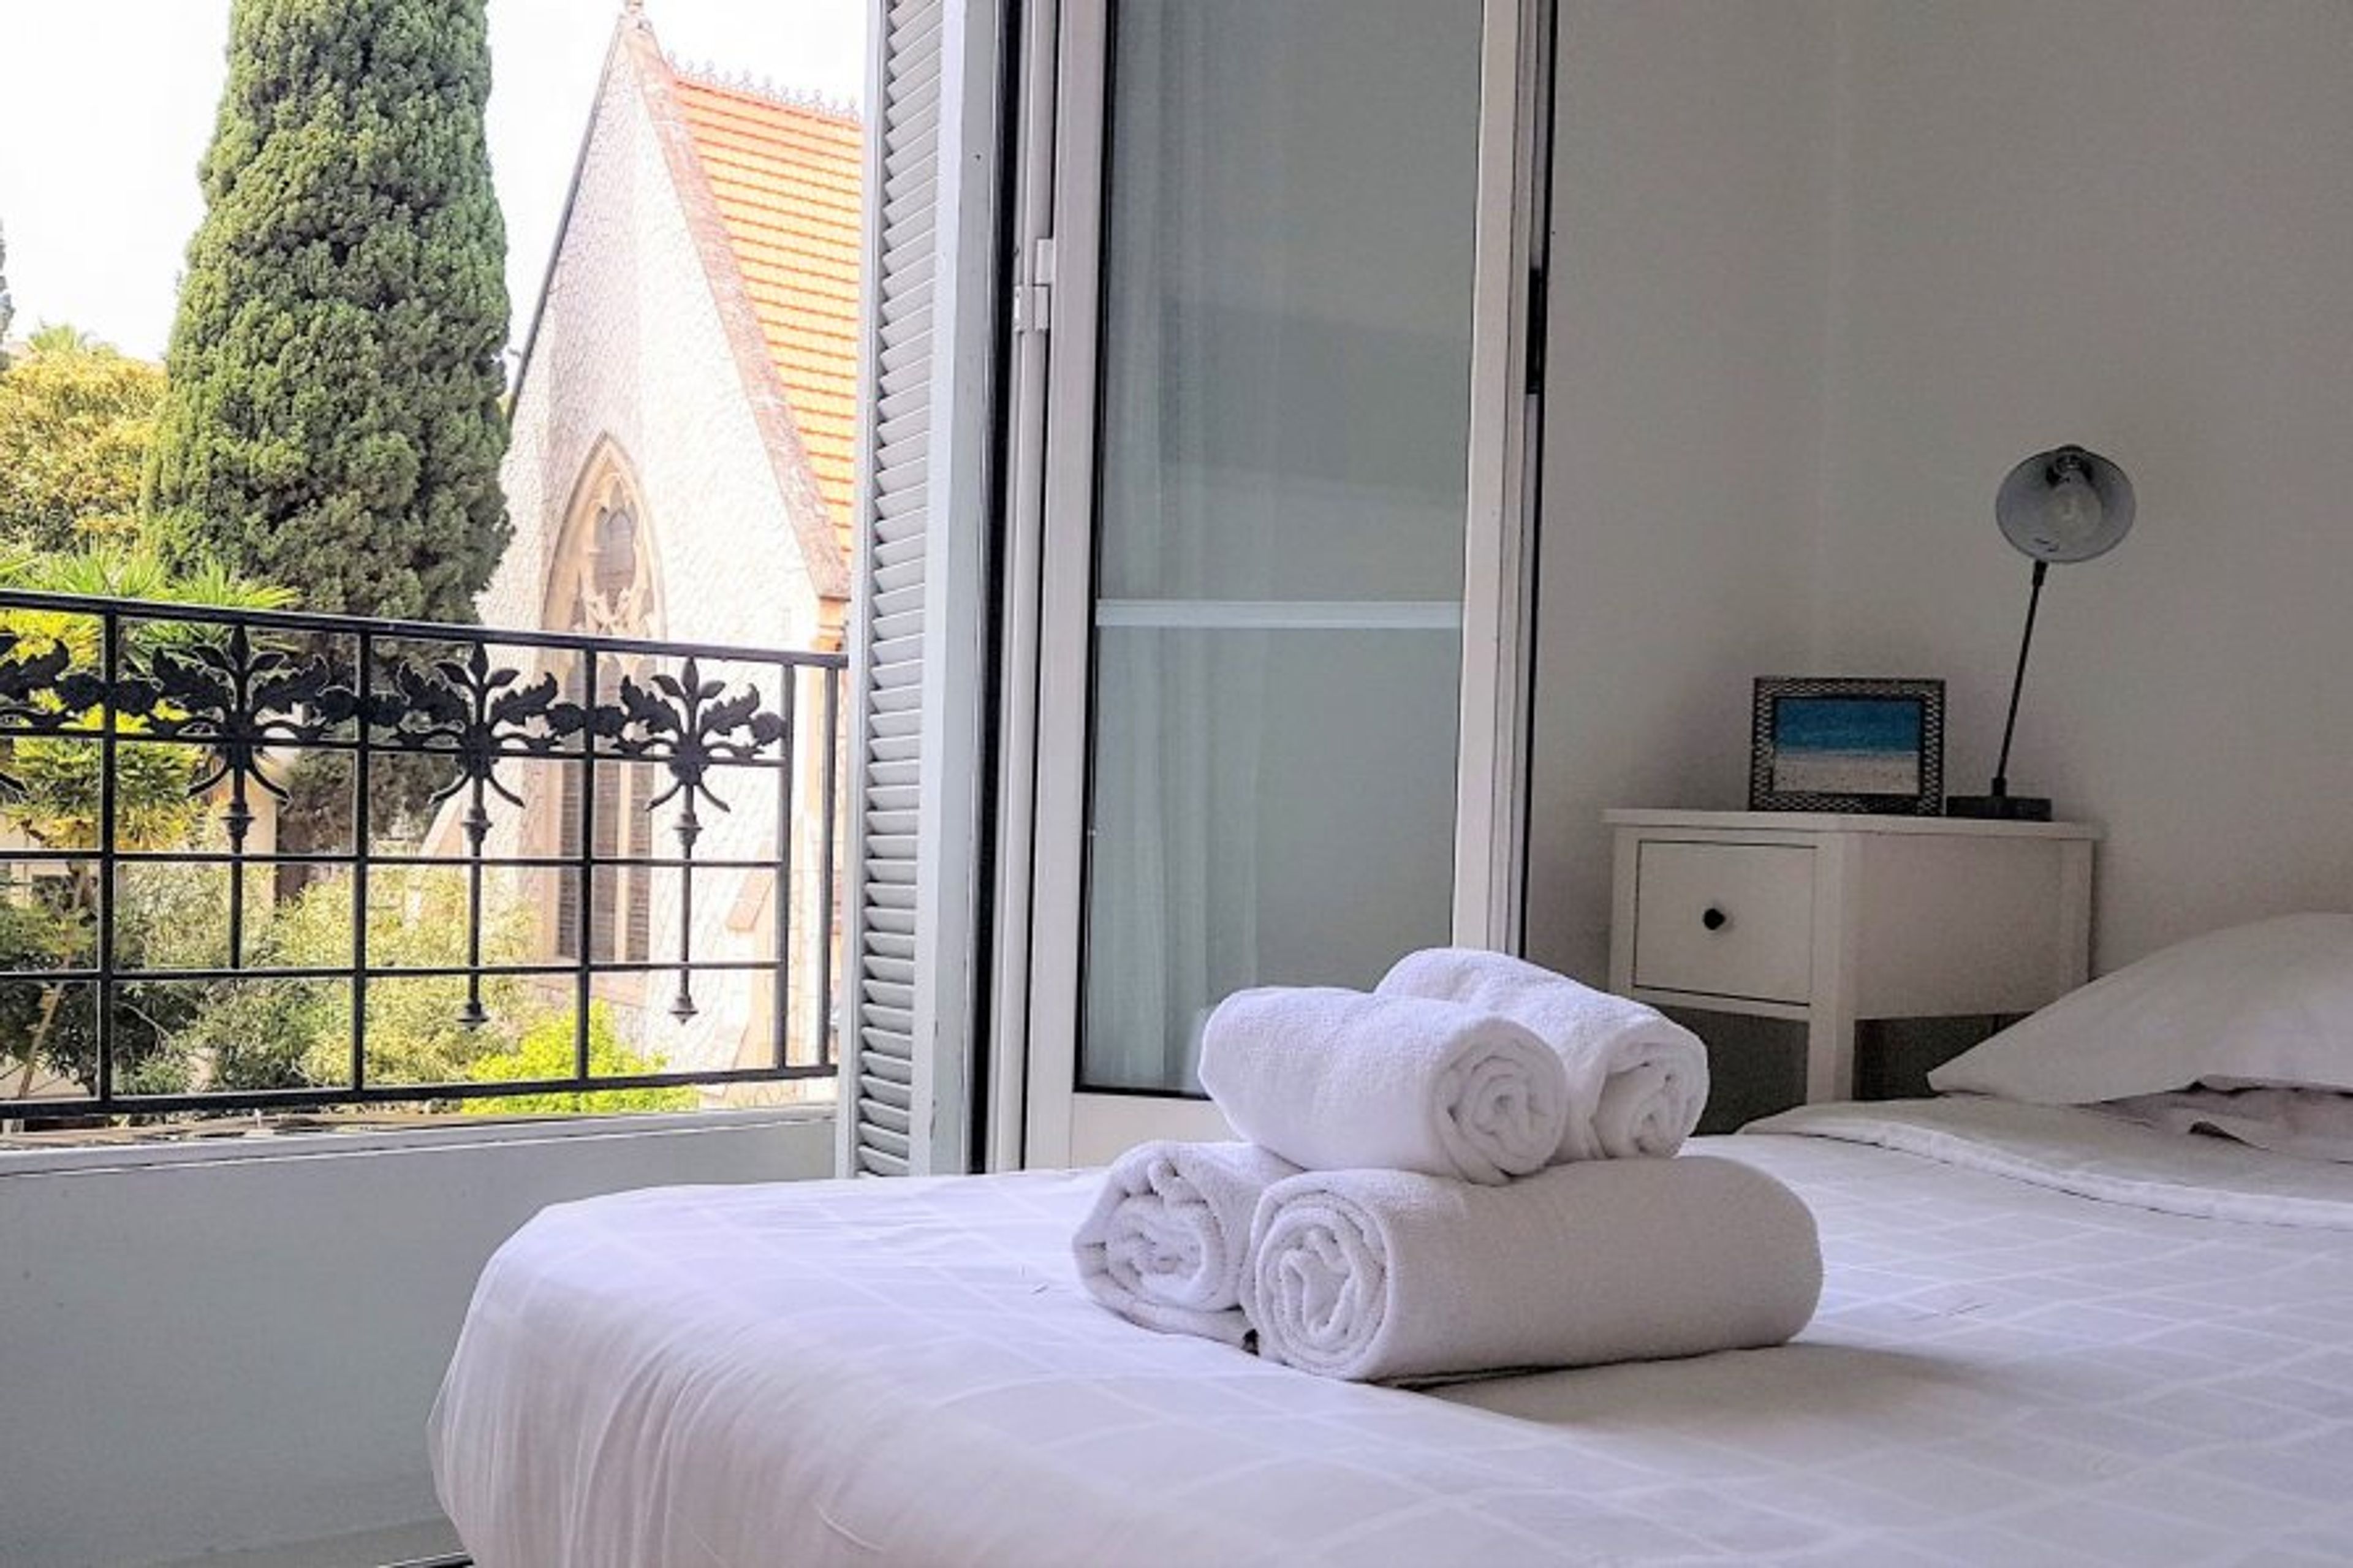 Bedroom - Kingsize bed. Balconette windows